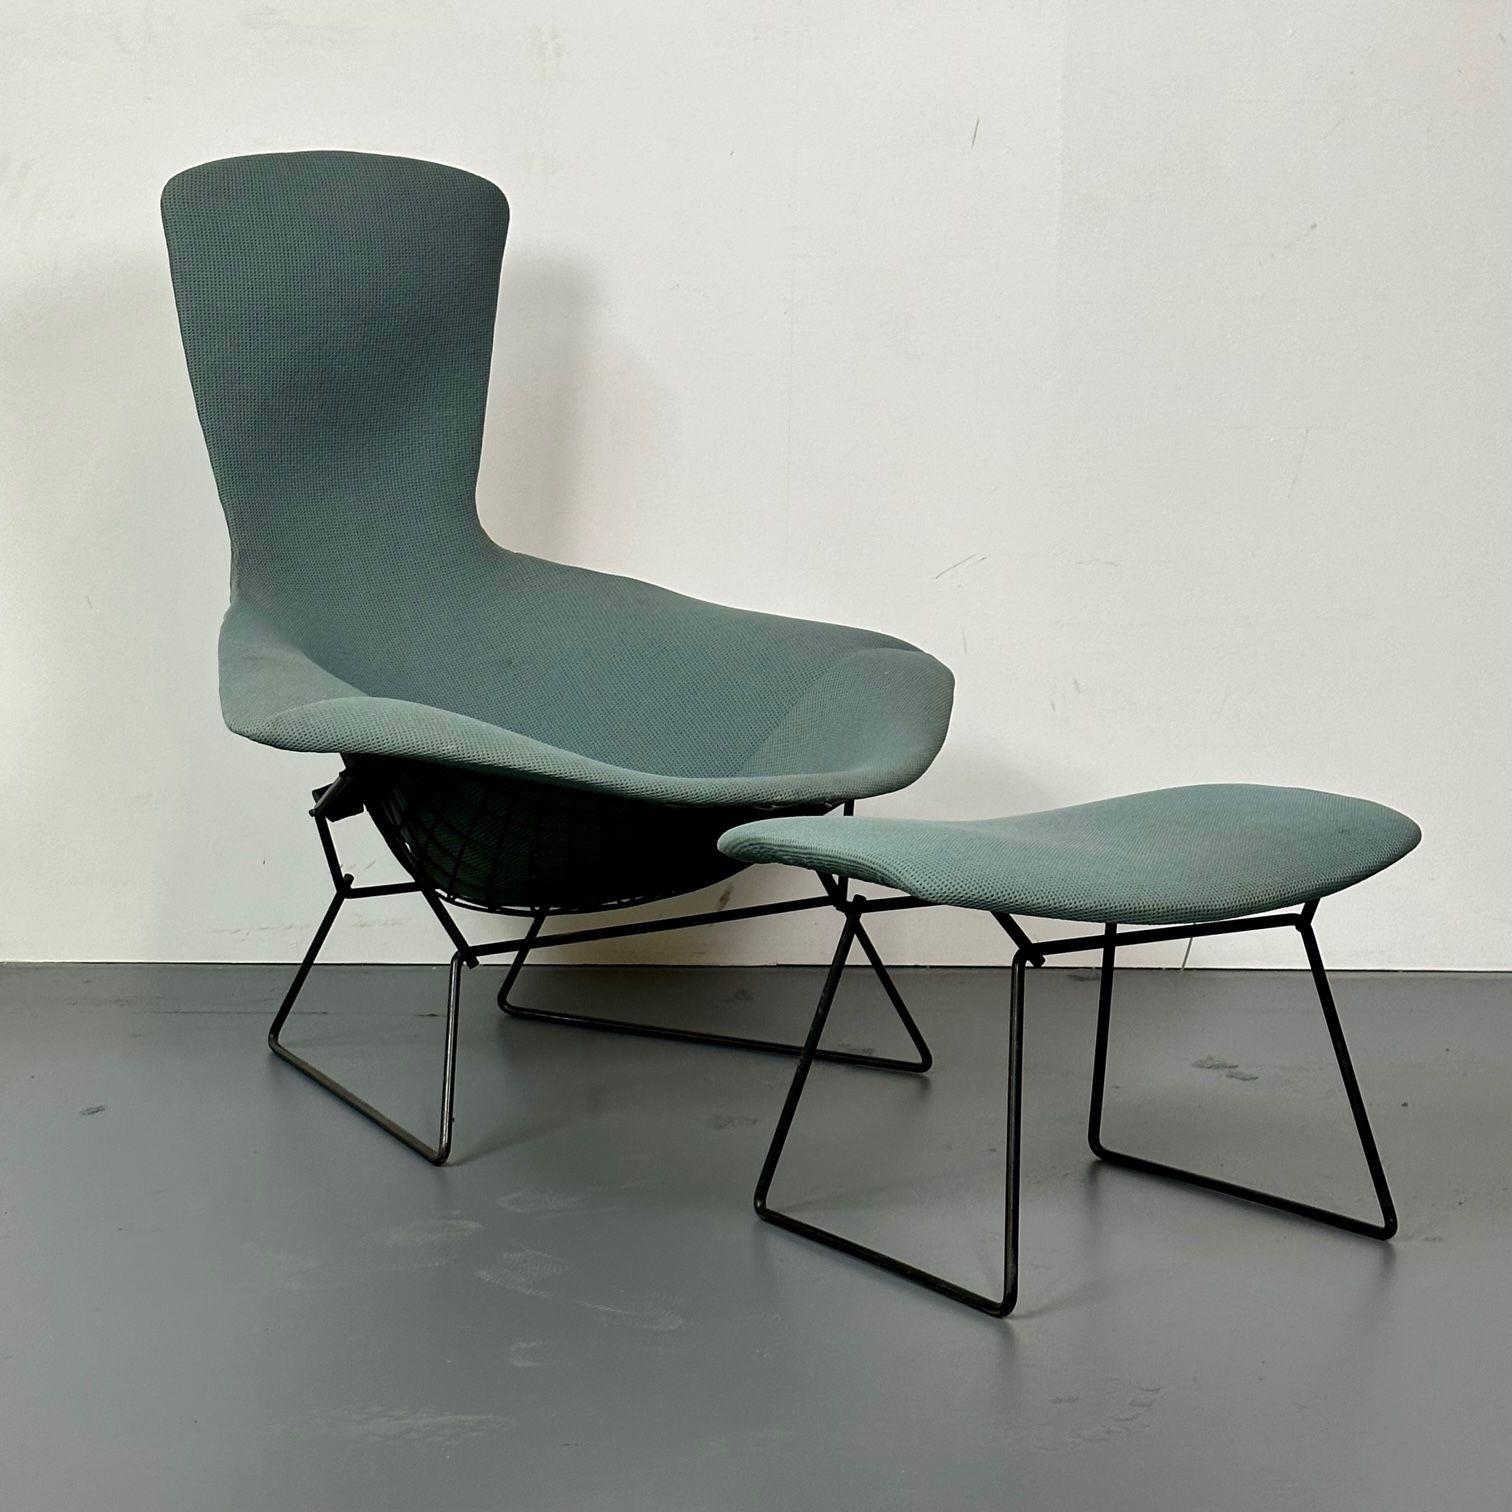 Vintage Harry Bertoia für Knoll Bird Lounge Stuhl mit Ottomane, Label, 1960er Jahre, Originalpolsterung
 
Diese ergonomischen Loungesessel wurden ursprünglich 1952 entworfen und sind sowohl bequem als auch stilvoll. Die Stühle von Bertoia sind